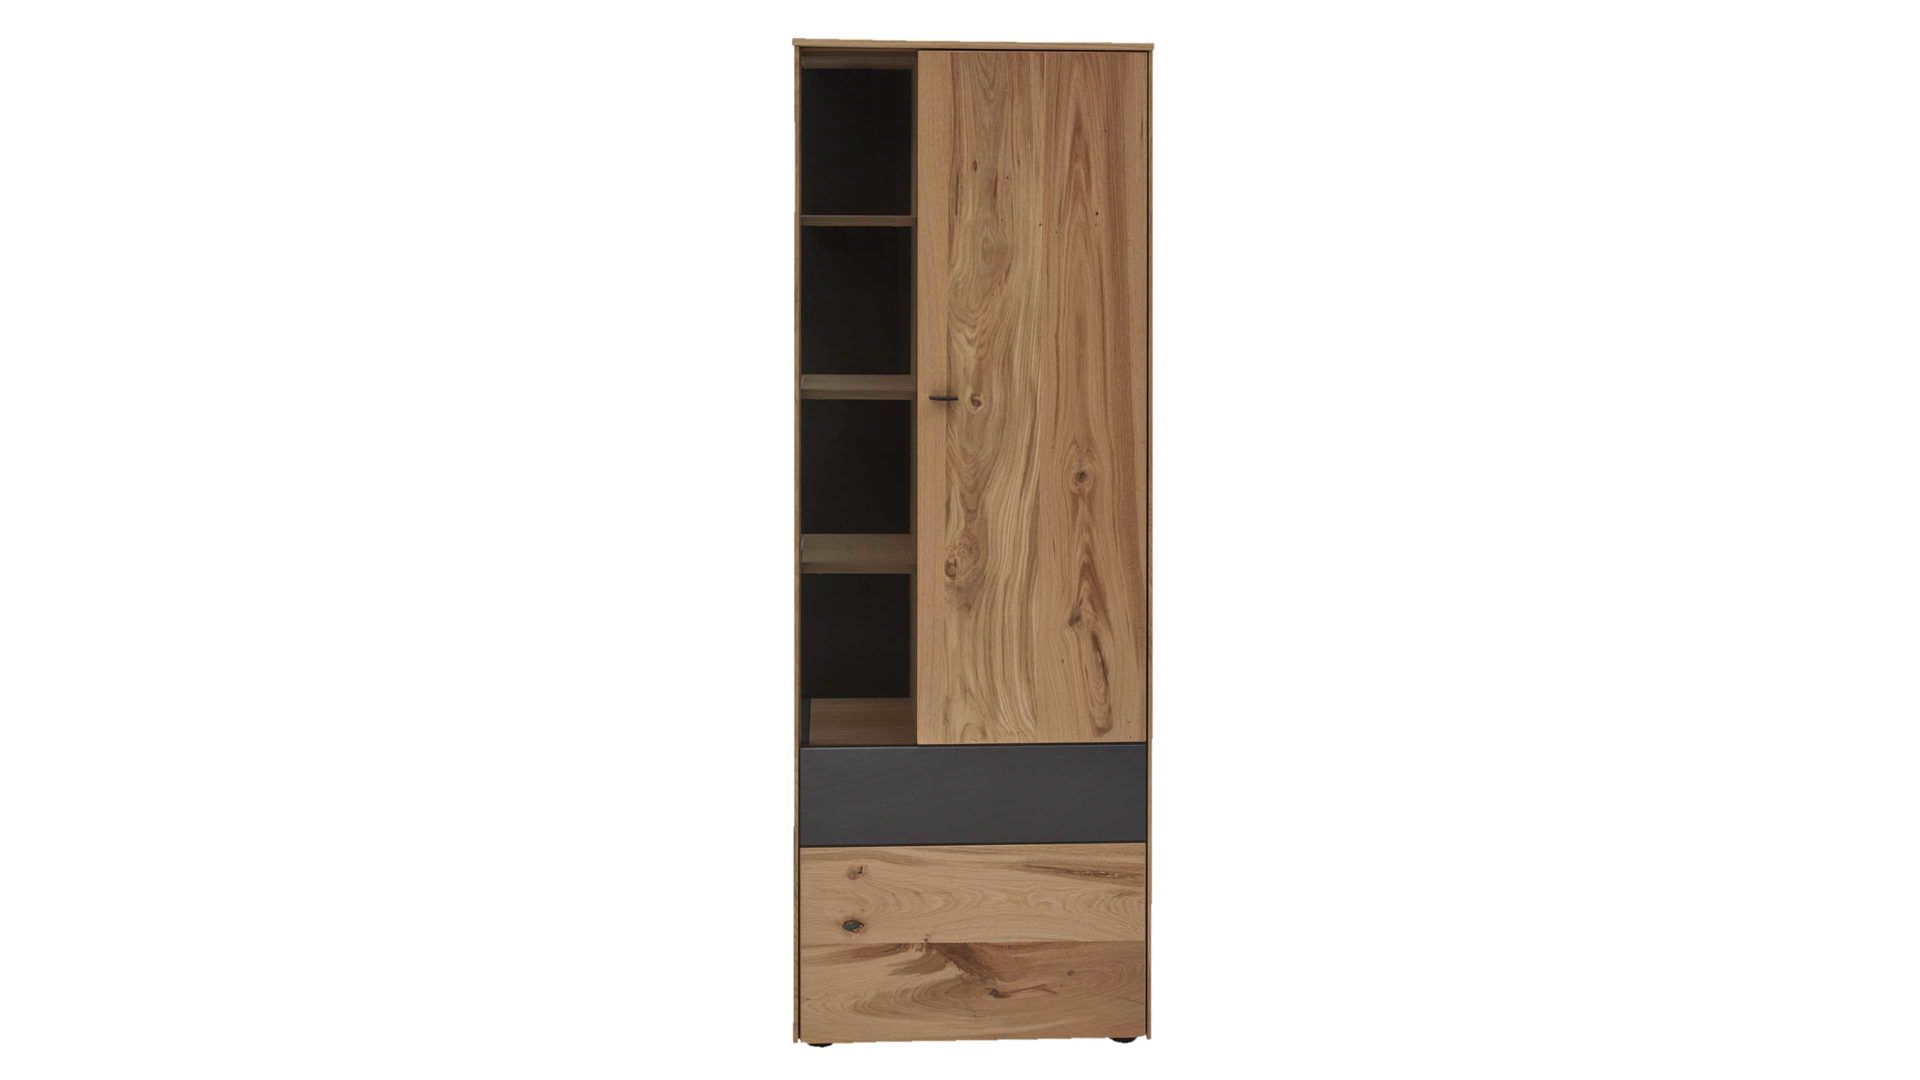 Vitrine Interliving aus Holz in Holzfarben Interliving Esszimmer Serie 5604 - Vitrine V740-0308R Eiche rustico & Anthrazit  - eine Tür